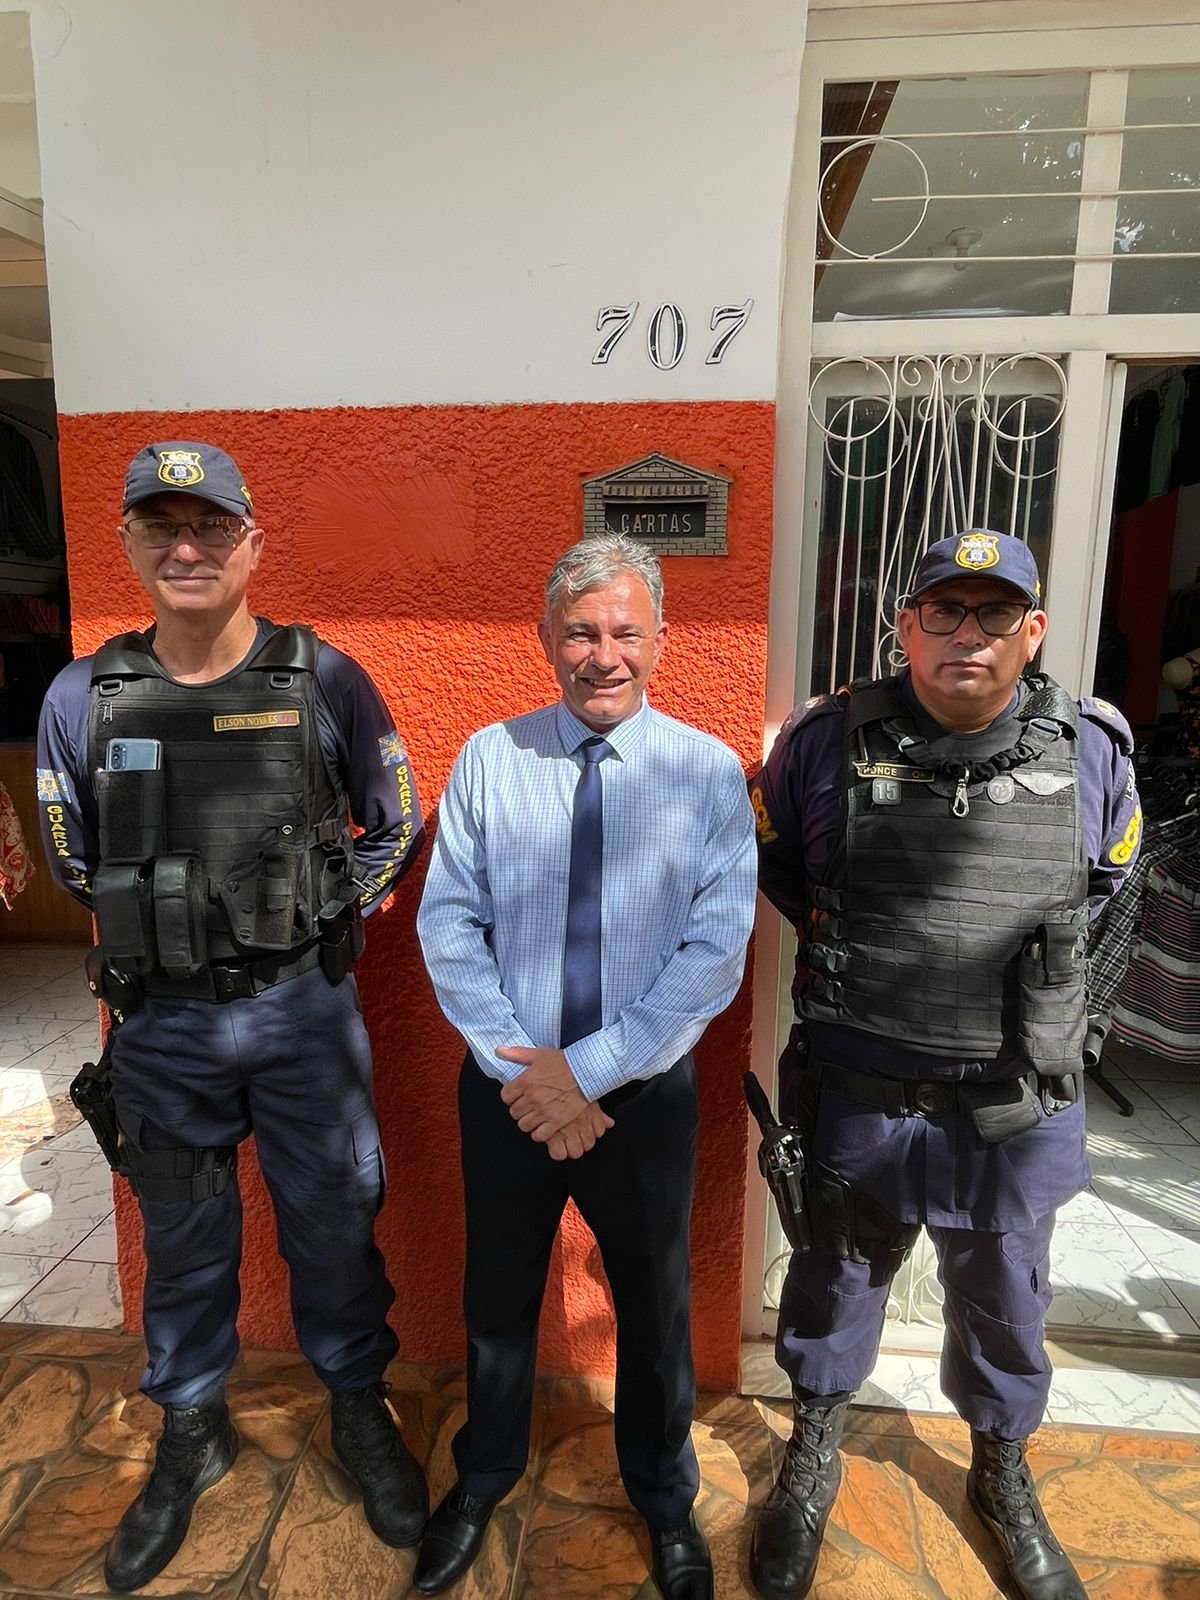 Vereador Zé da Farmácia cobra presença de guarda municipal em unidades públicas